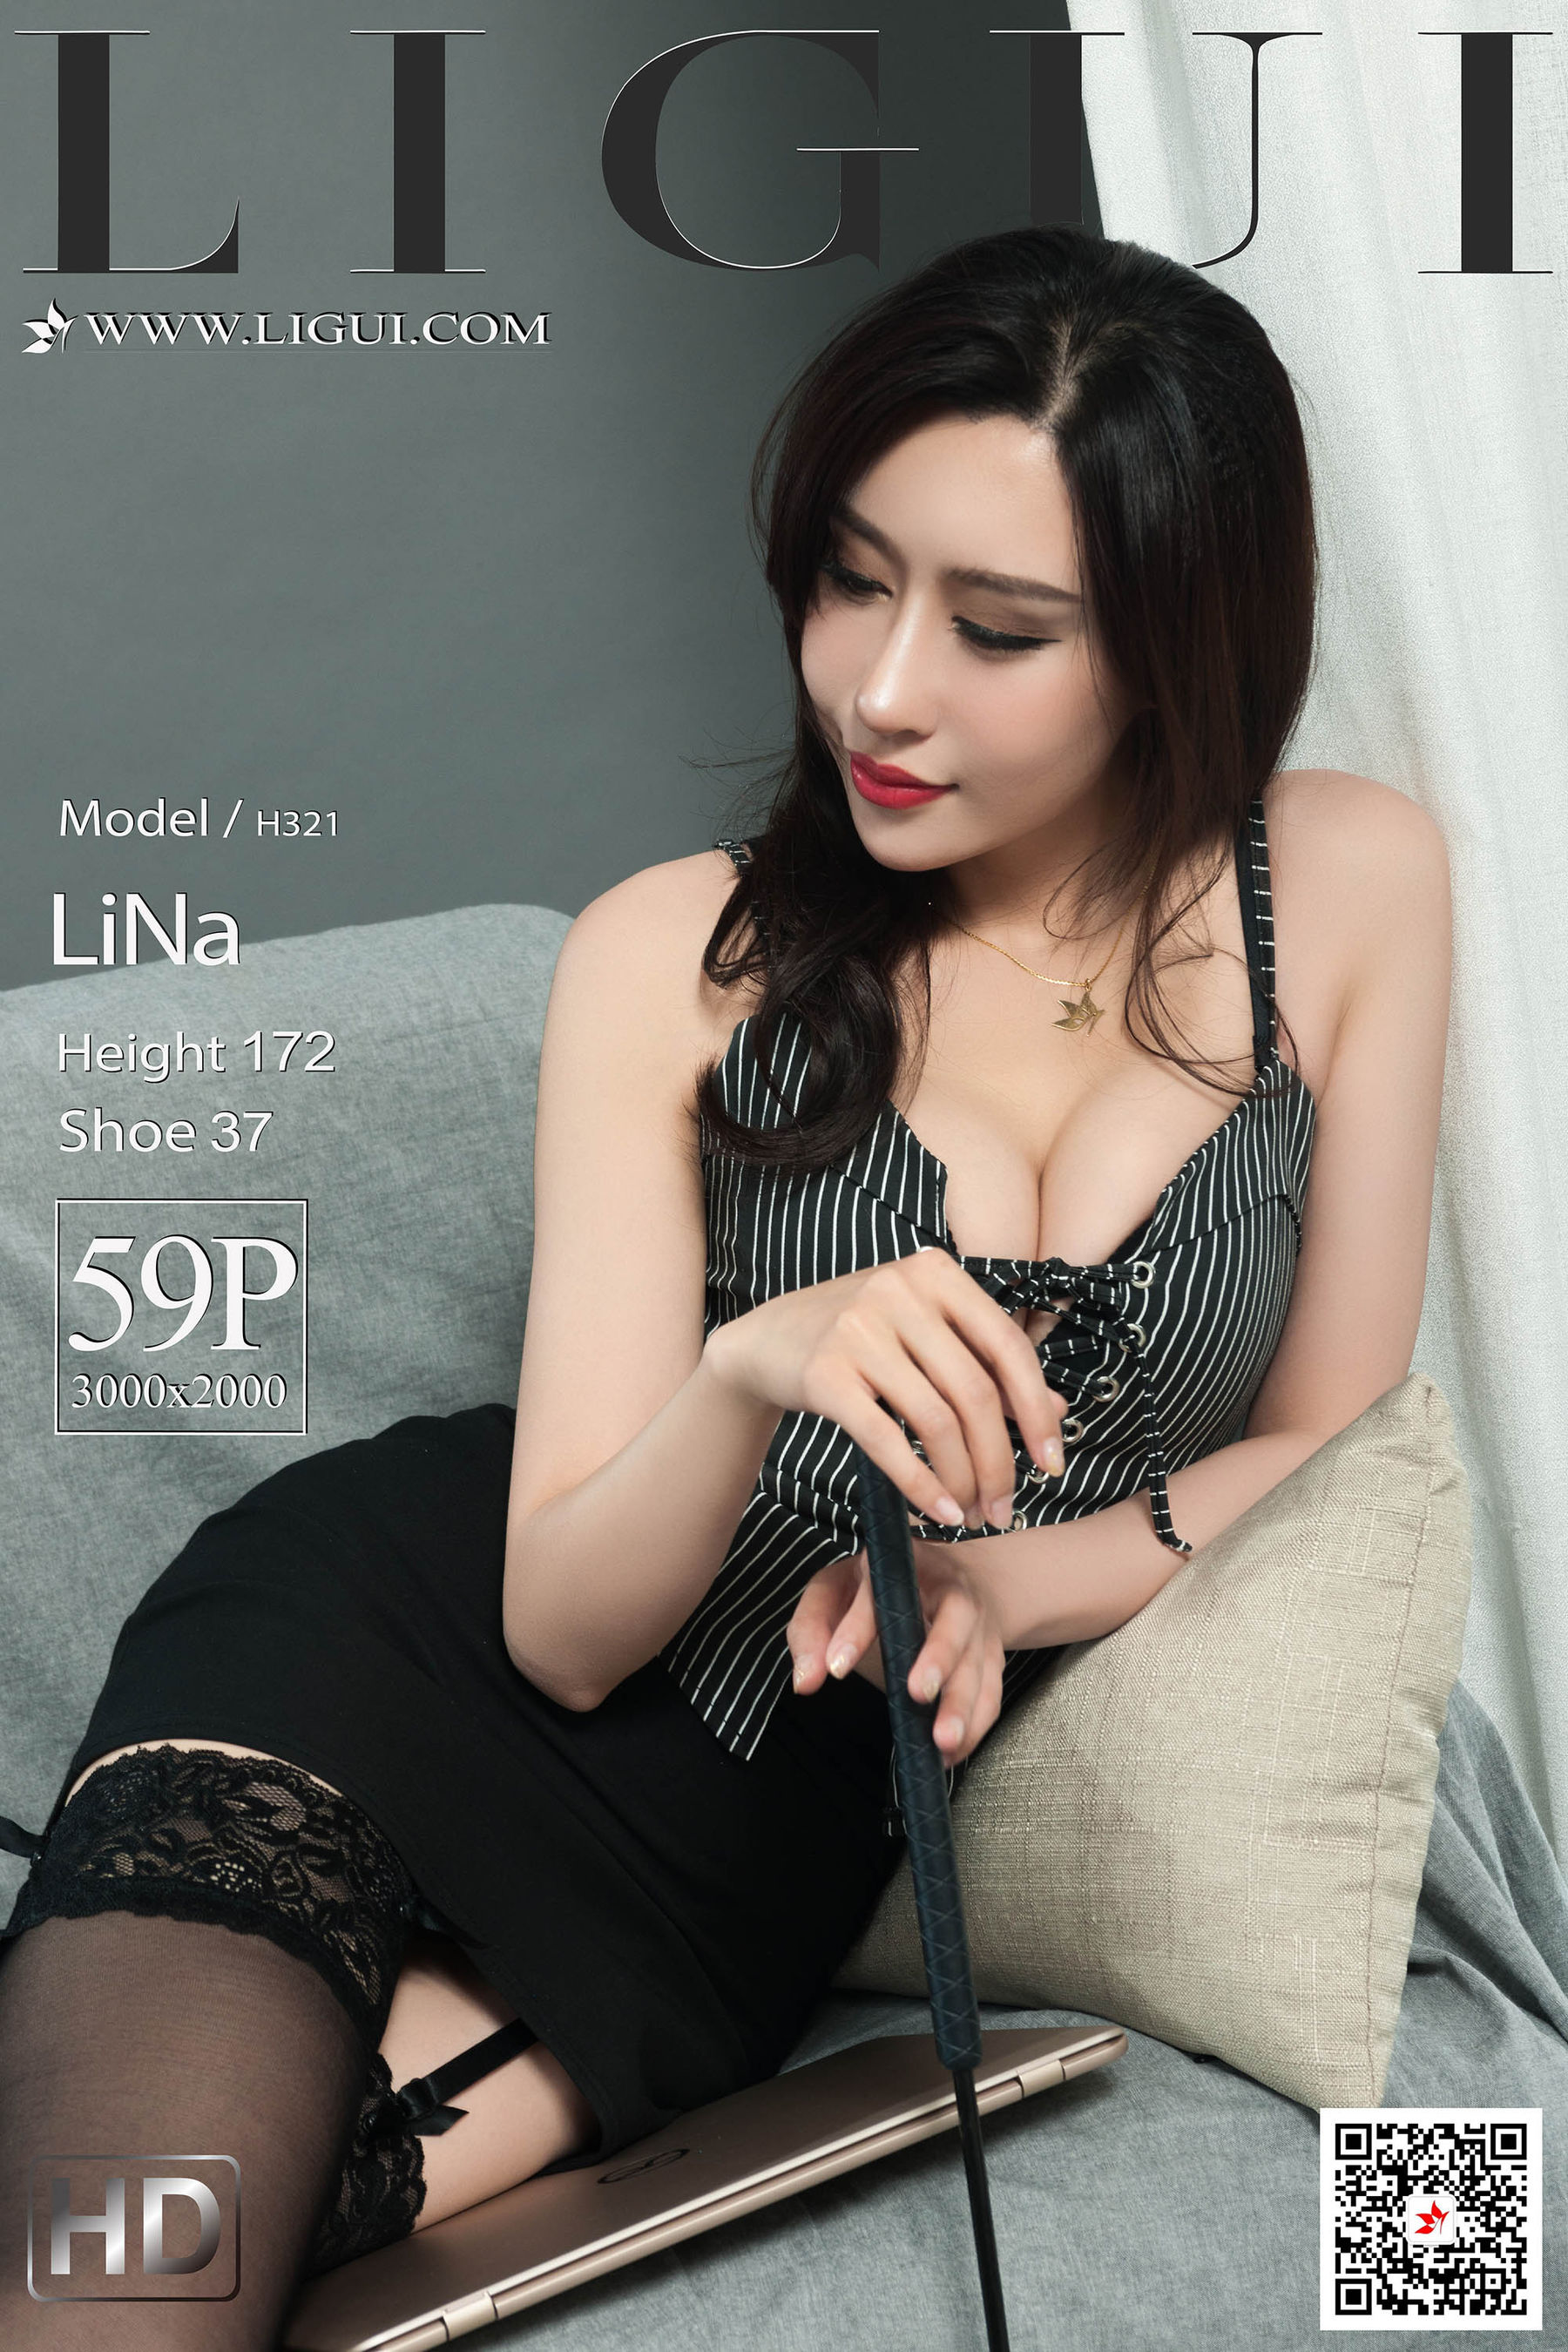 [丽柜Ligui] 网络丽人 Model LiNa  第5张